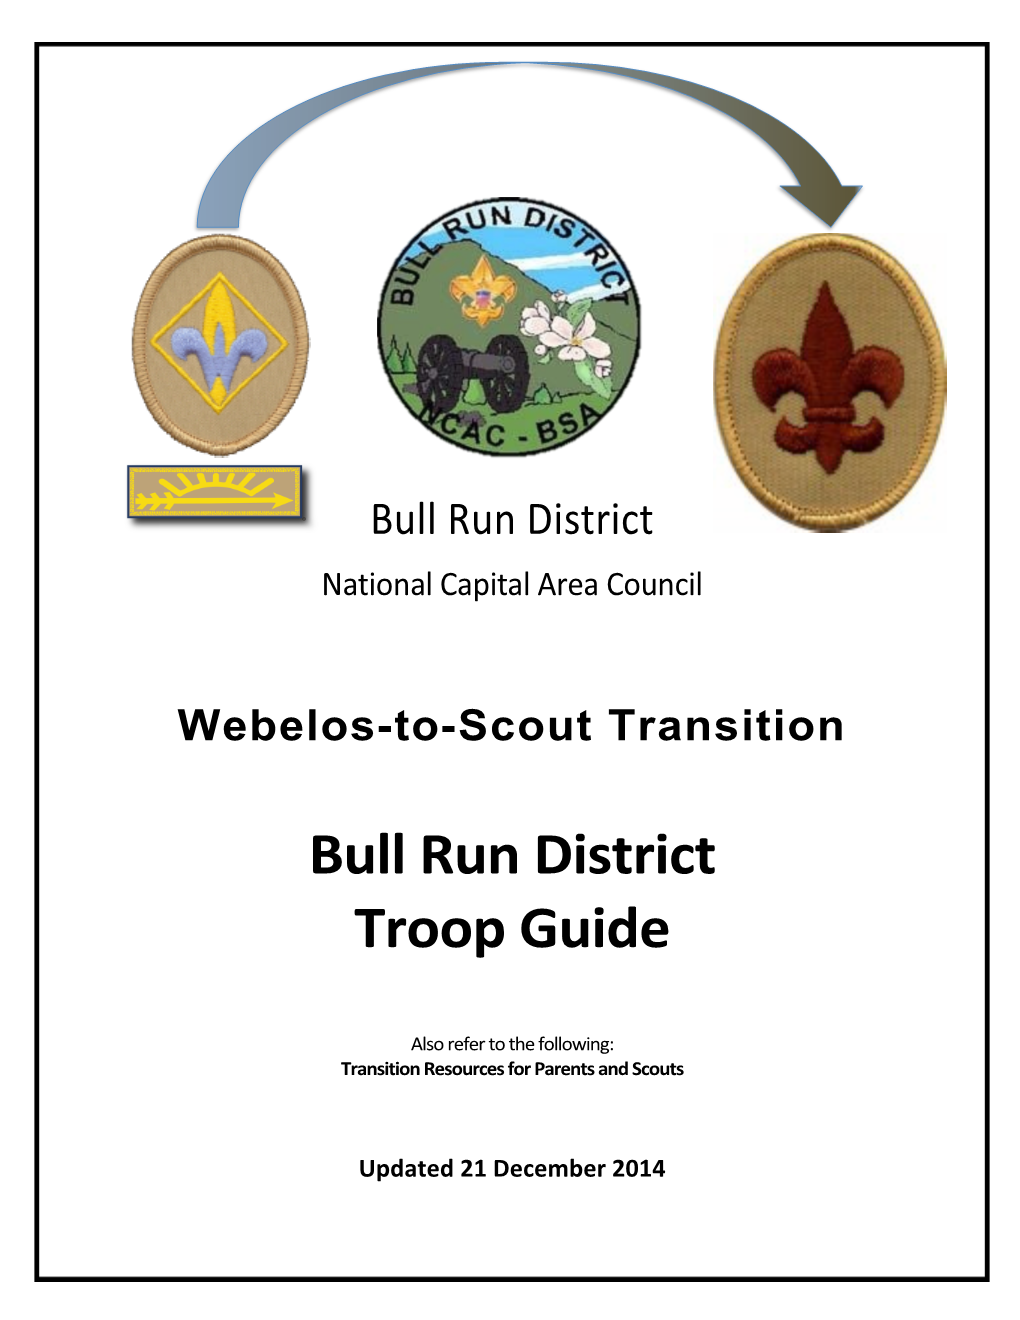 Bull Run District Troop Guide